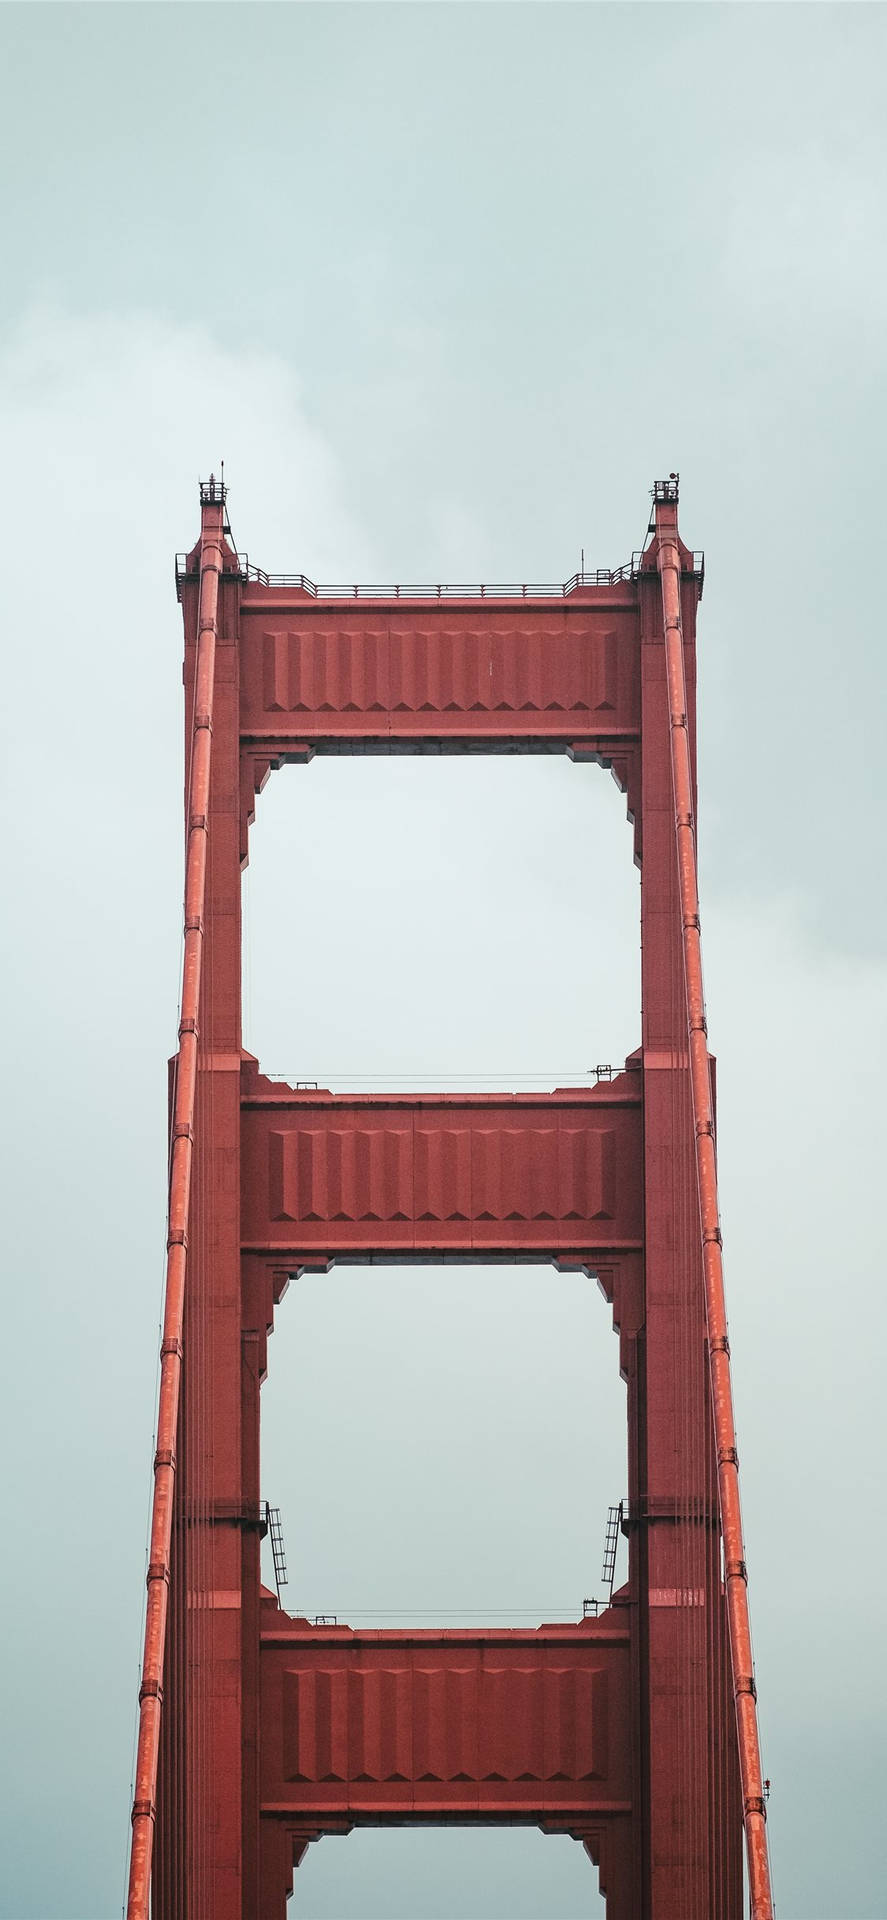 Golden Gate Bridge Red Pylon Background